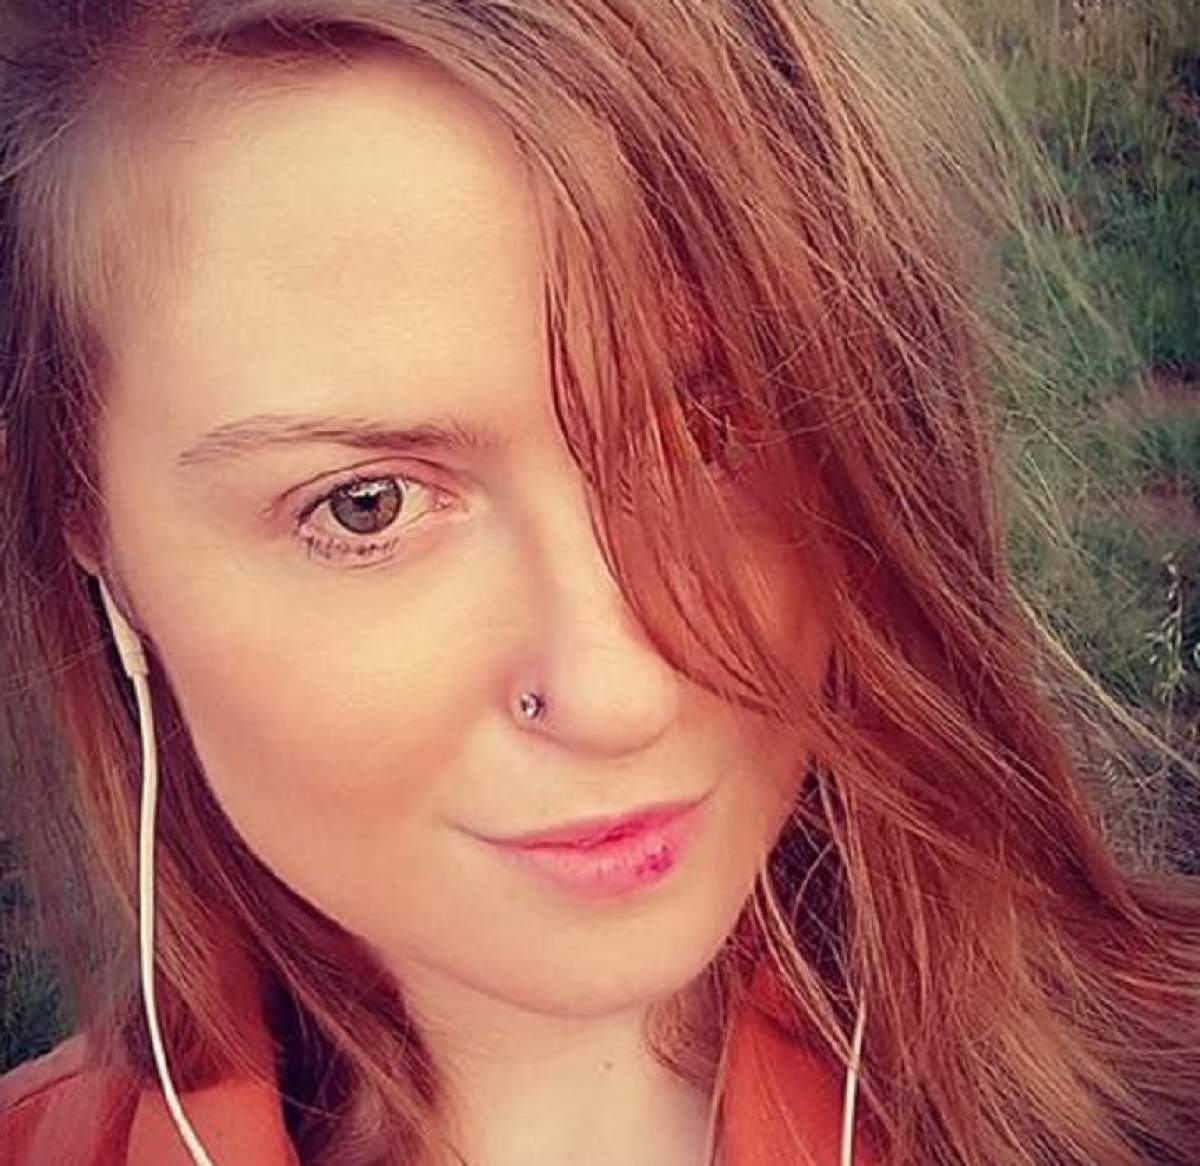 Dramă pentru o tânără de 30 de ani! A fost violată de „bărbatul vieții ei”, pe care l-a cunoscut pe Facebook